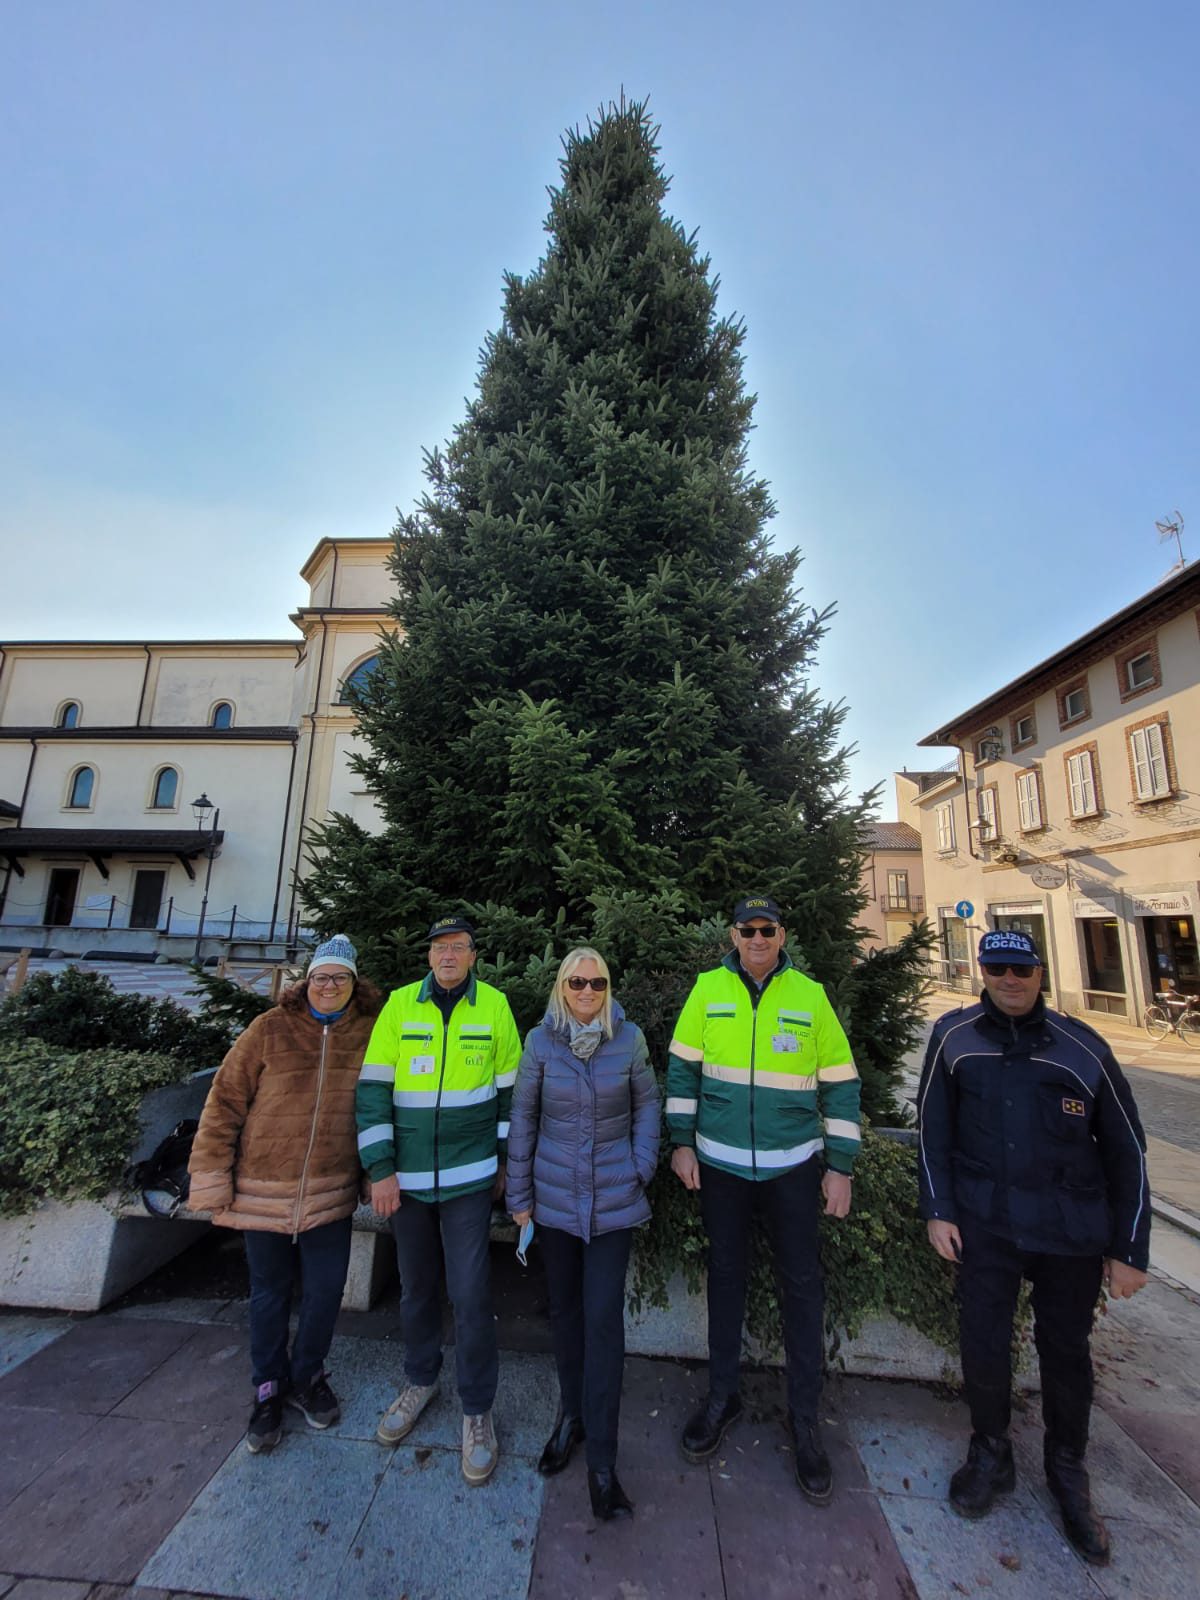 Momento magico: arrivato in piazza l’albero di Natale di Lazzate